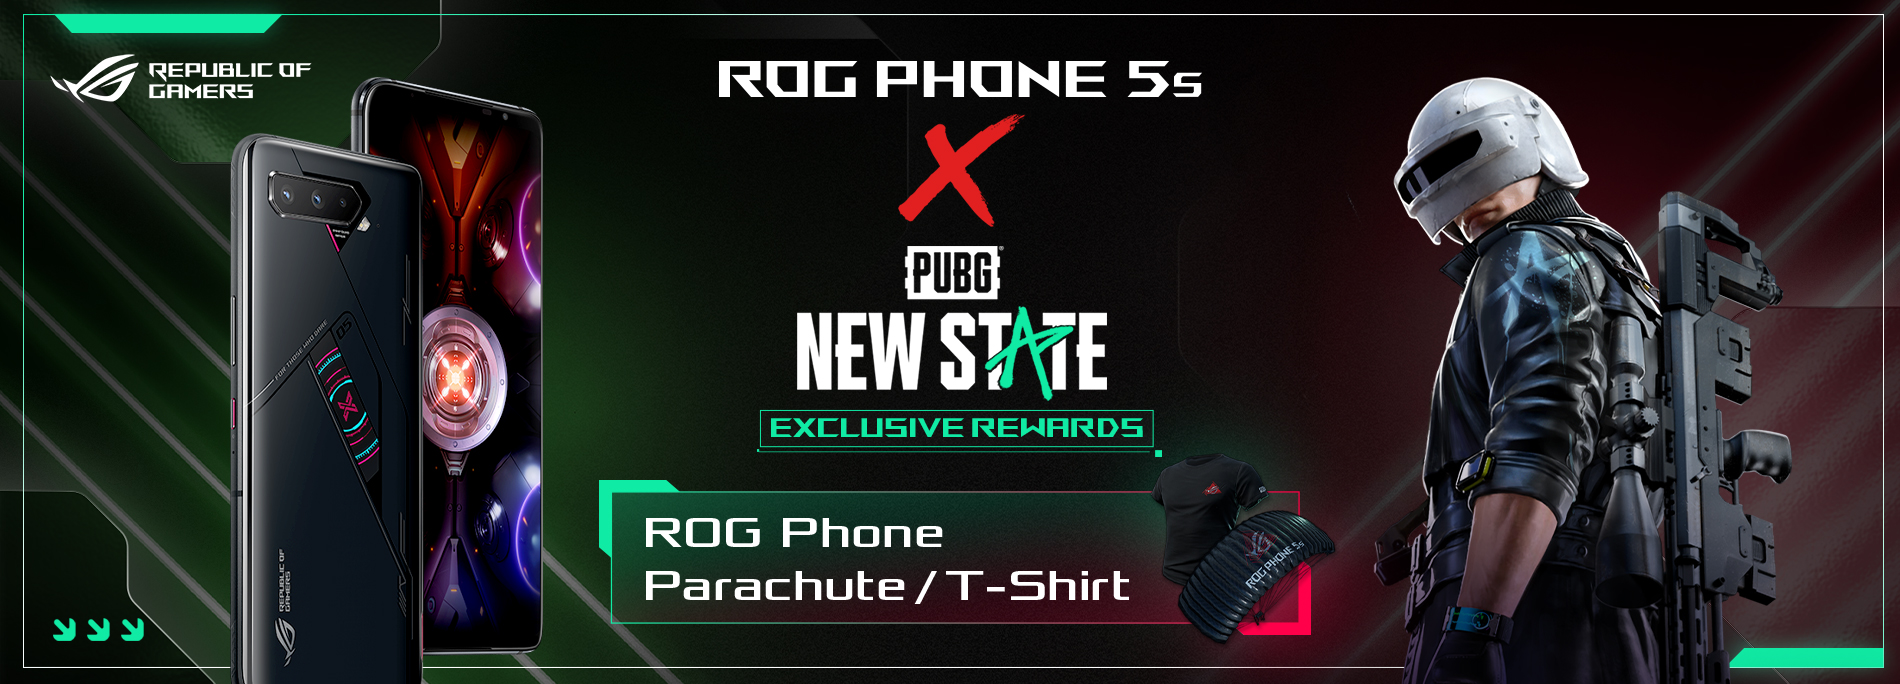 helper Van toepassing zijn wenselijk ROG Phone 5s x PUBG: NEW STATE Exclusive Rewards